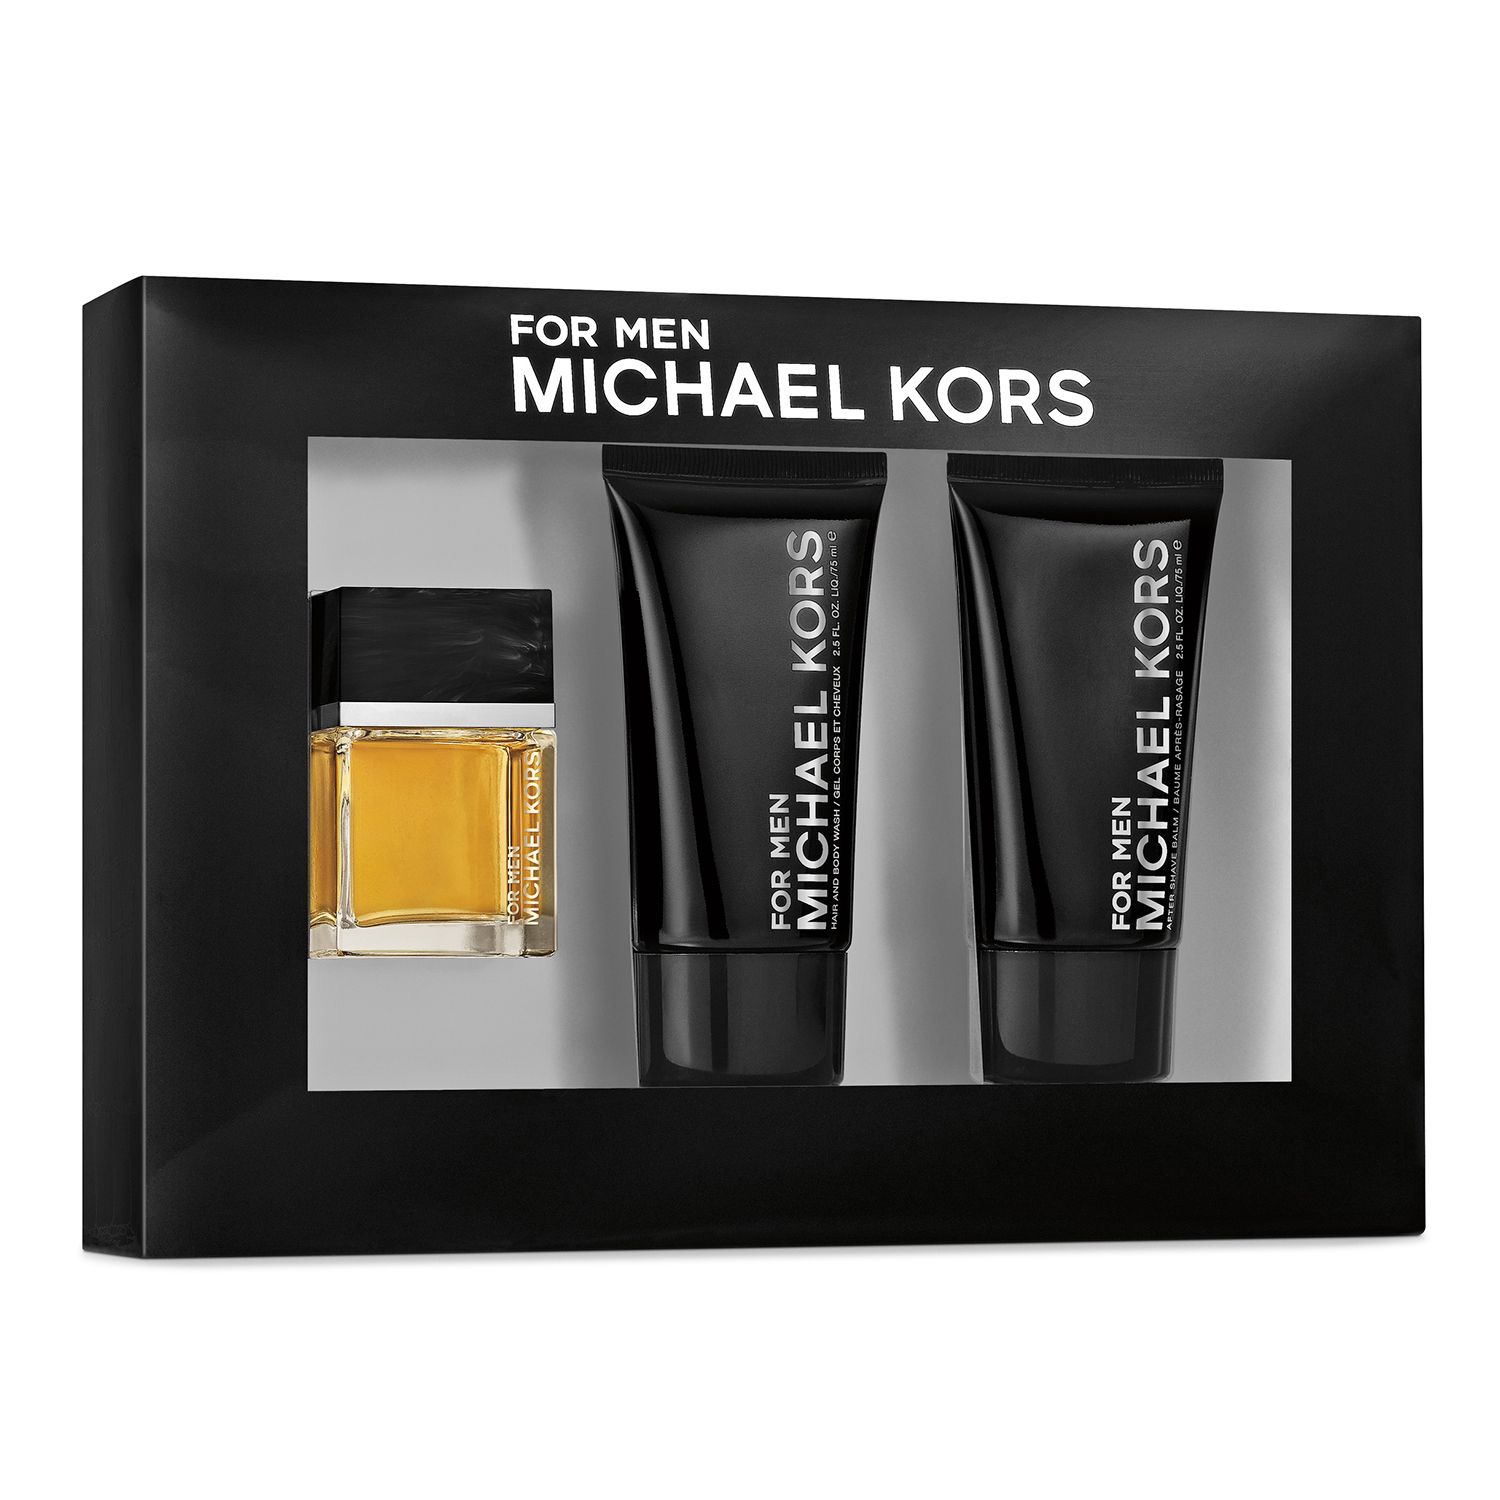 Michael Kors For Men Cologne Gift Set